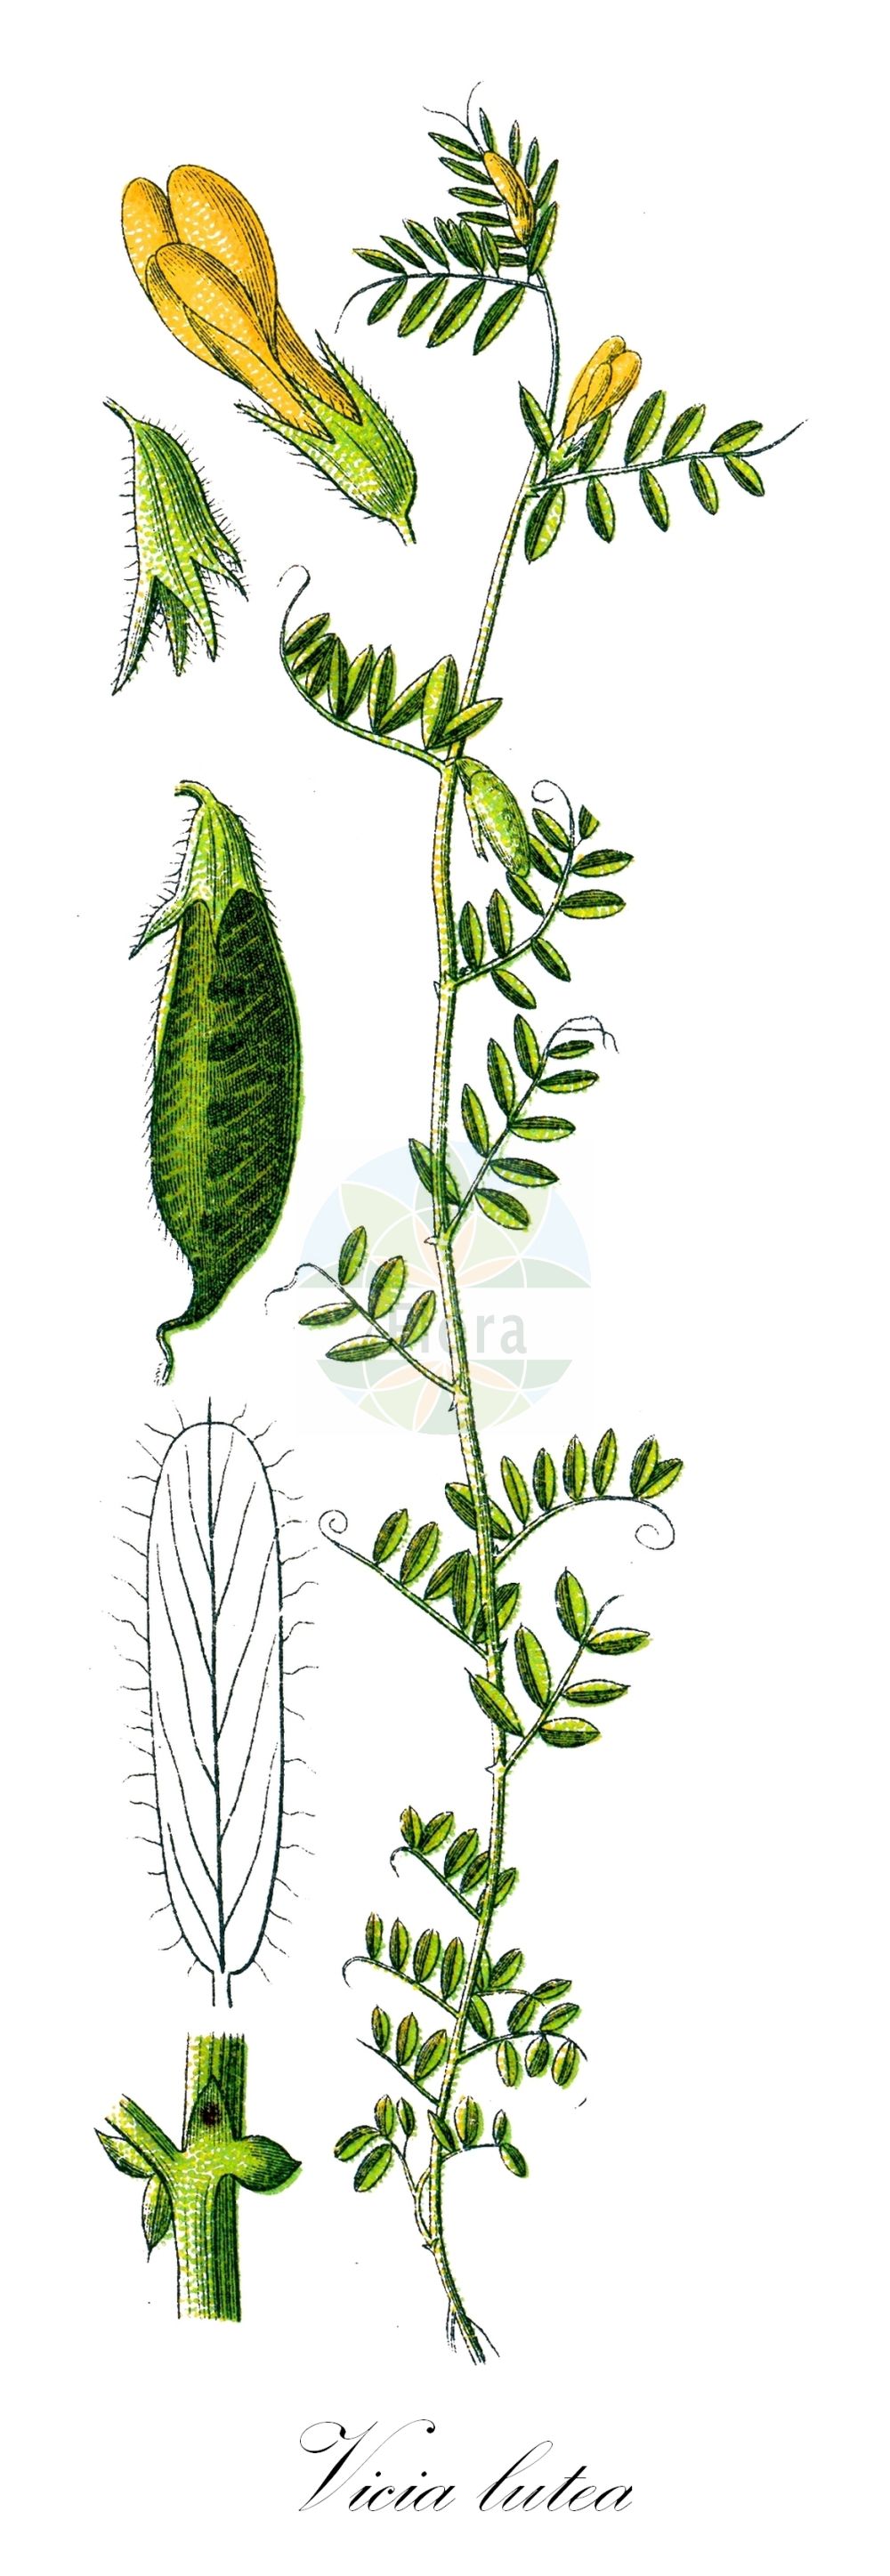 Historische Abbildung von Vicia lutea (Gelbe Wicke - Yellow-vetch). Das Bild zeigt Blatt, Bluete, Frucht und Same. ---- Historical Drawing of Vicia lutea (Gelbe Wicke - Yellow-vetch). The image is showing leaf, flower, fruit and seed.(Vicia lutea,Gelbe Wicke,Yellow-vetch,Hypechusa lutea,Vicia ciliata,Vicia lineata,Vicia lutea,Vicia lutea subsp. cavanillesii,Gelbe Wicke,Yellow-vetch,Smooth Yellow Vetch,Vicia,Wicke,Vetch,Fabaceae,Schmetterlingsblütler,Pea family,Blatt,Bluete,Frucht,Same,leaf,flower,fruit,seed,Sturm (1796f))